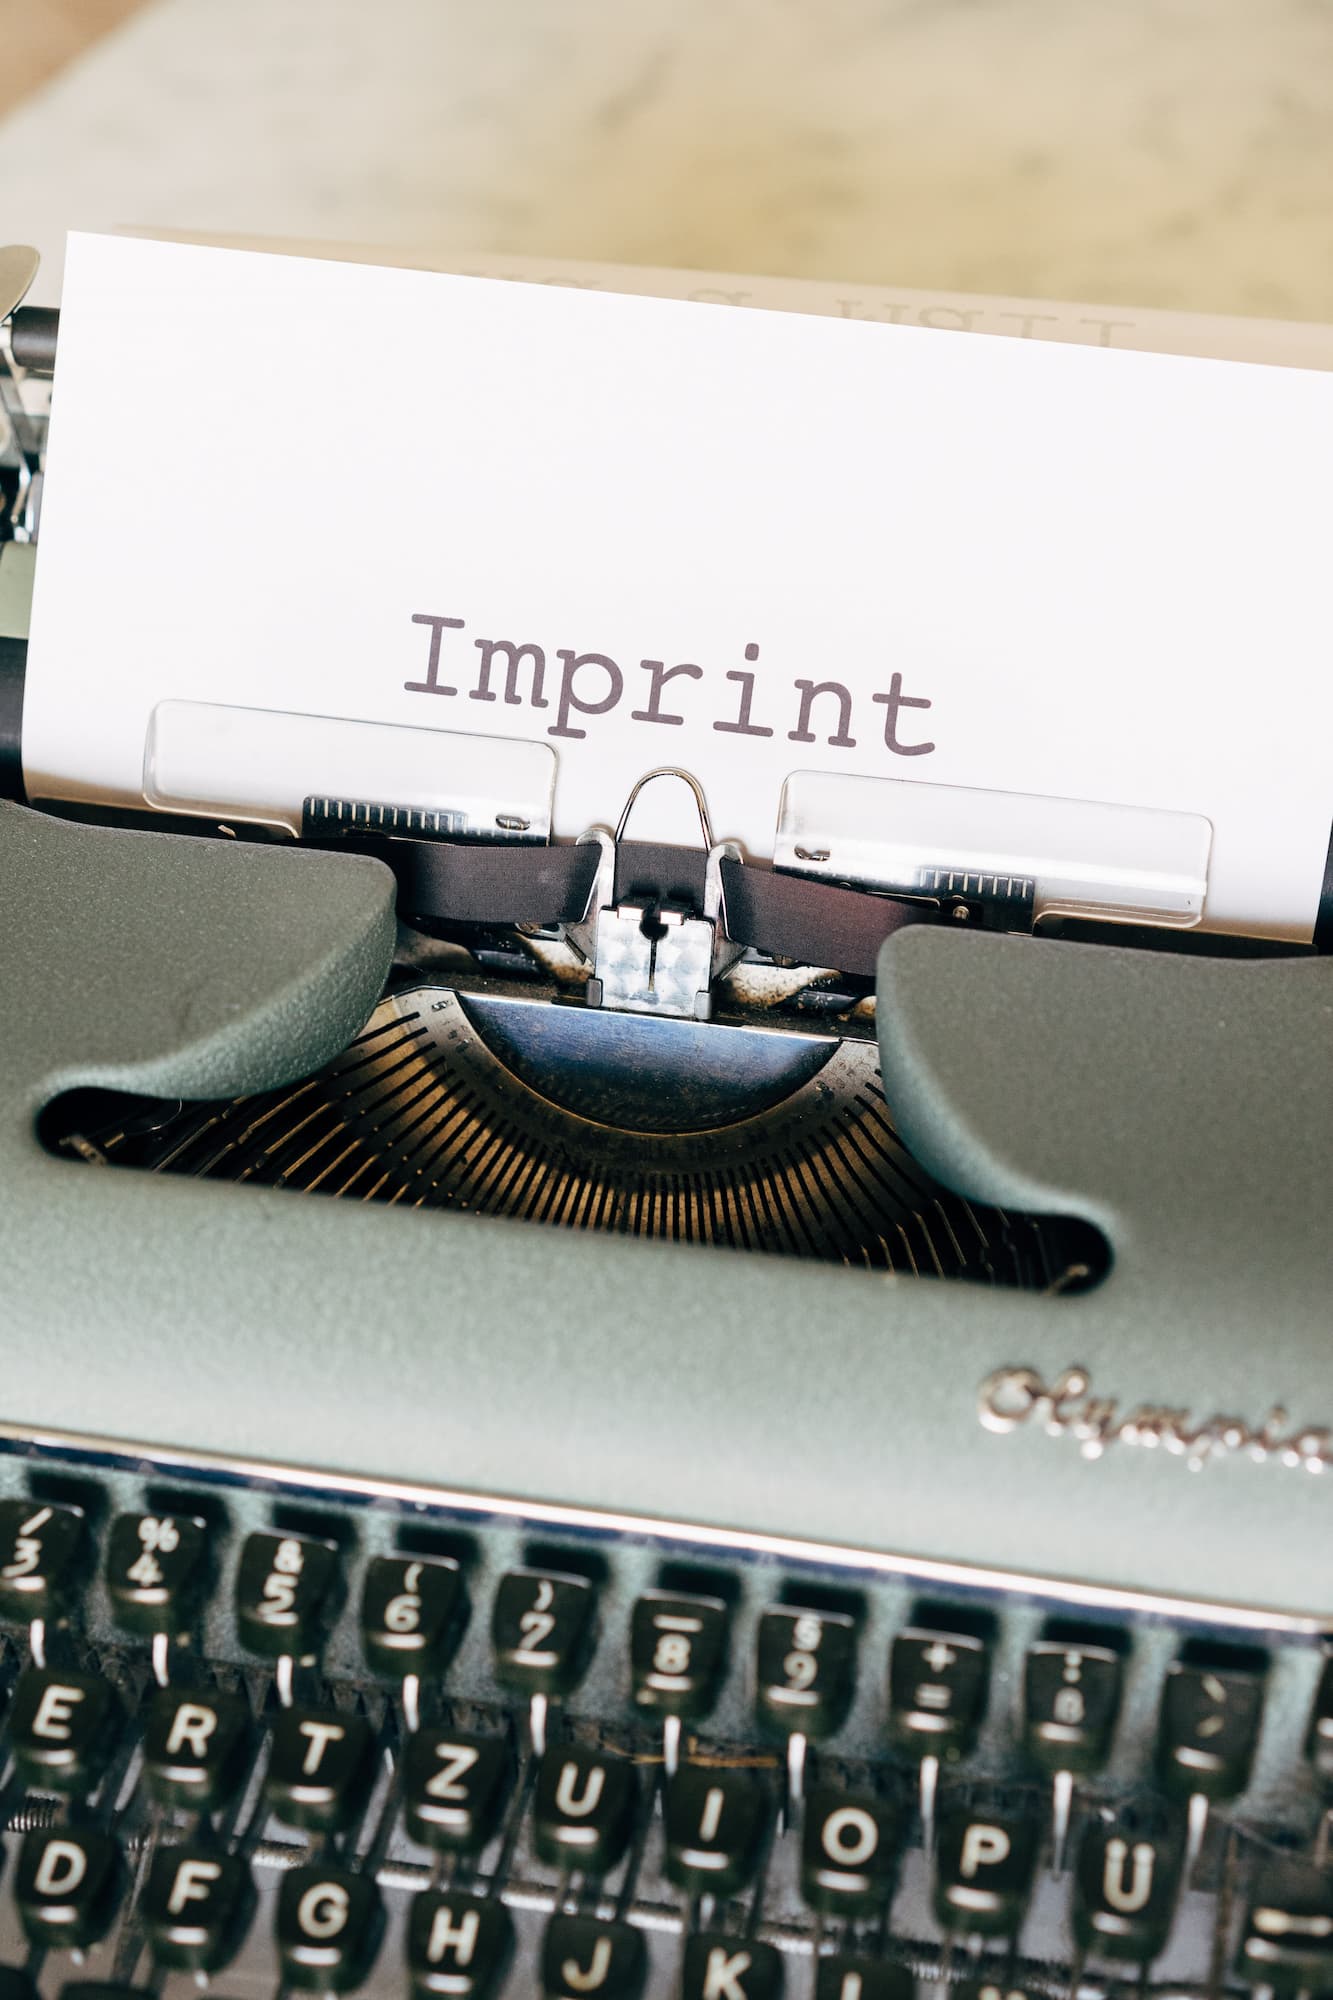 Imprint on Typewriter